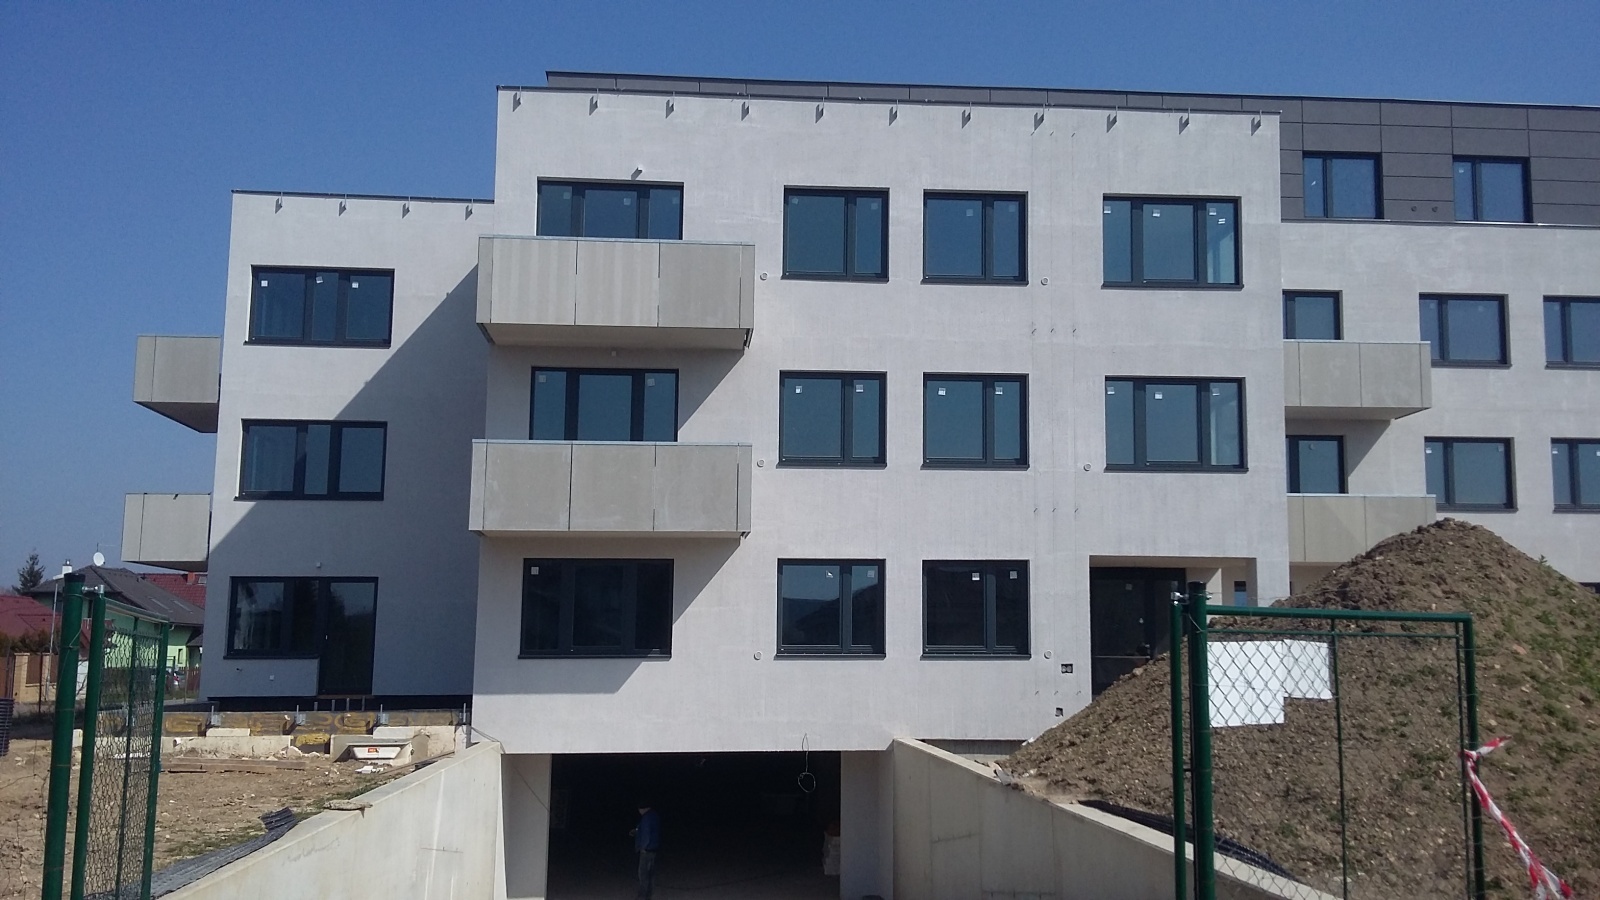 Komerční prostor, 96.5 m2, Horoměřice, Projekt Višnovka - bytové domy